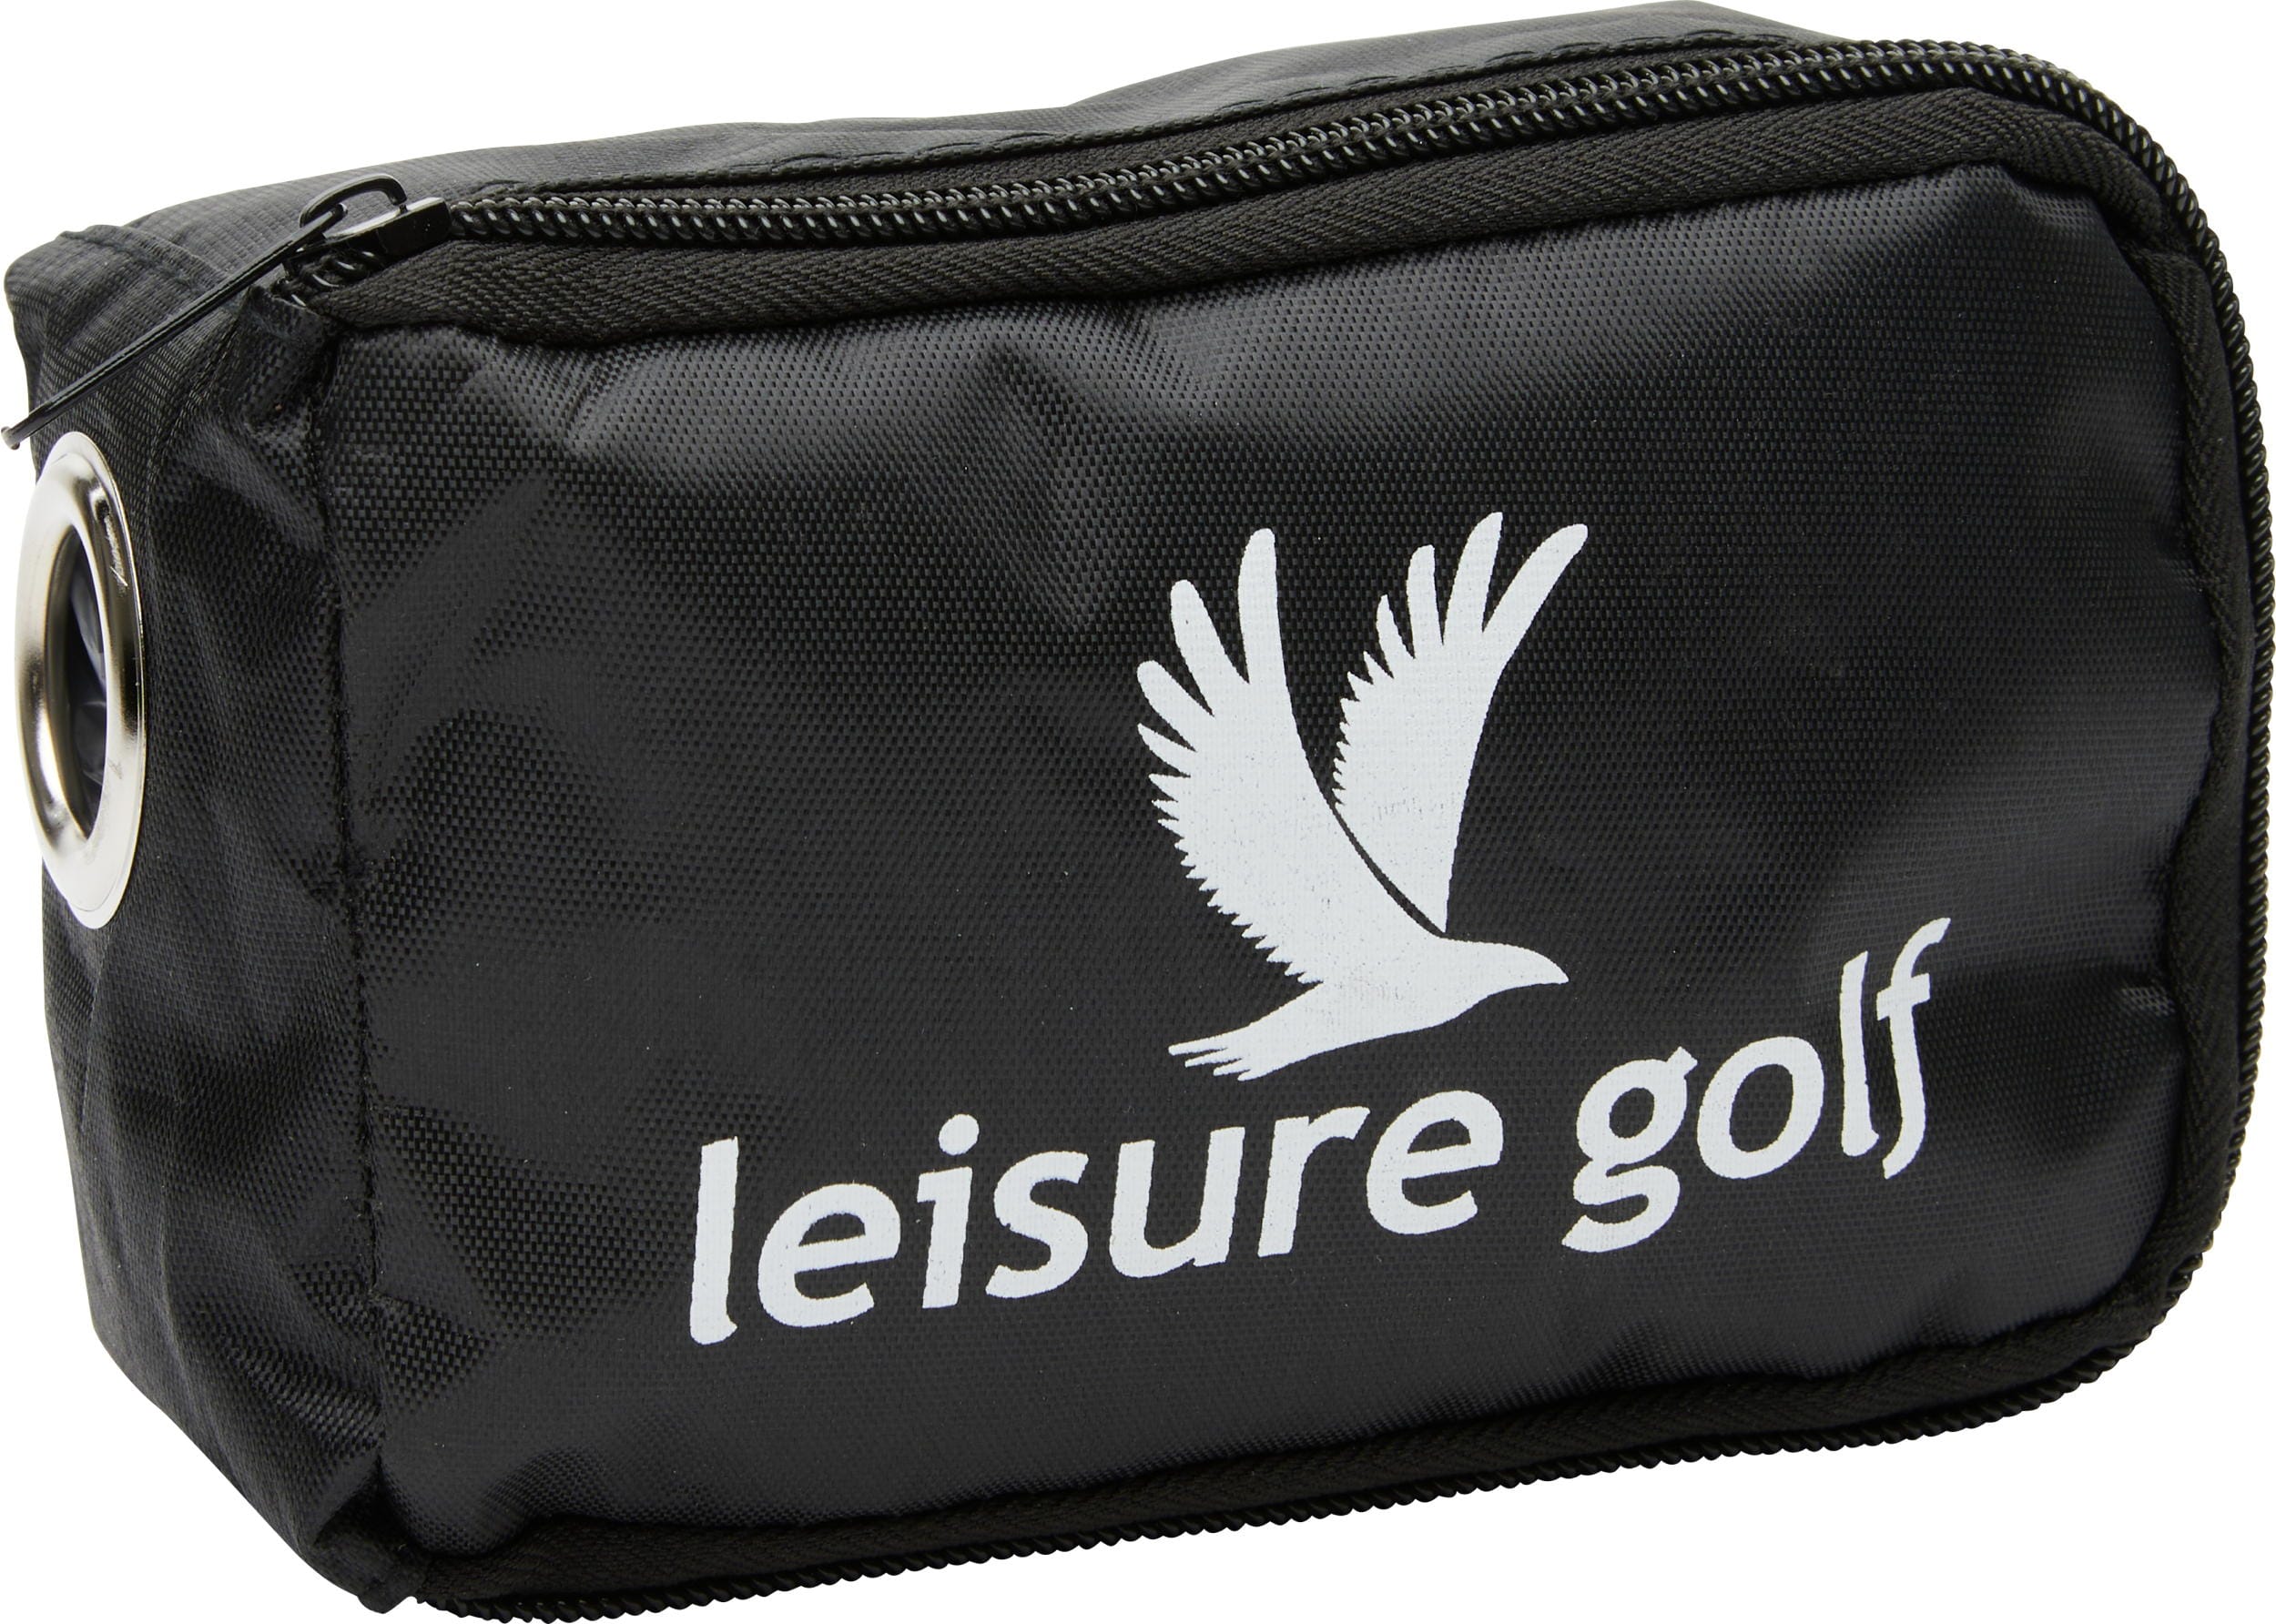 Leisure Golf Batterietasche